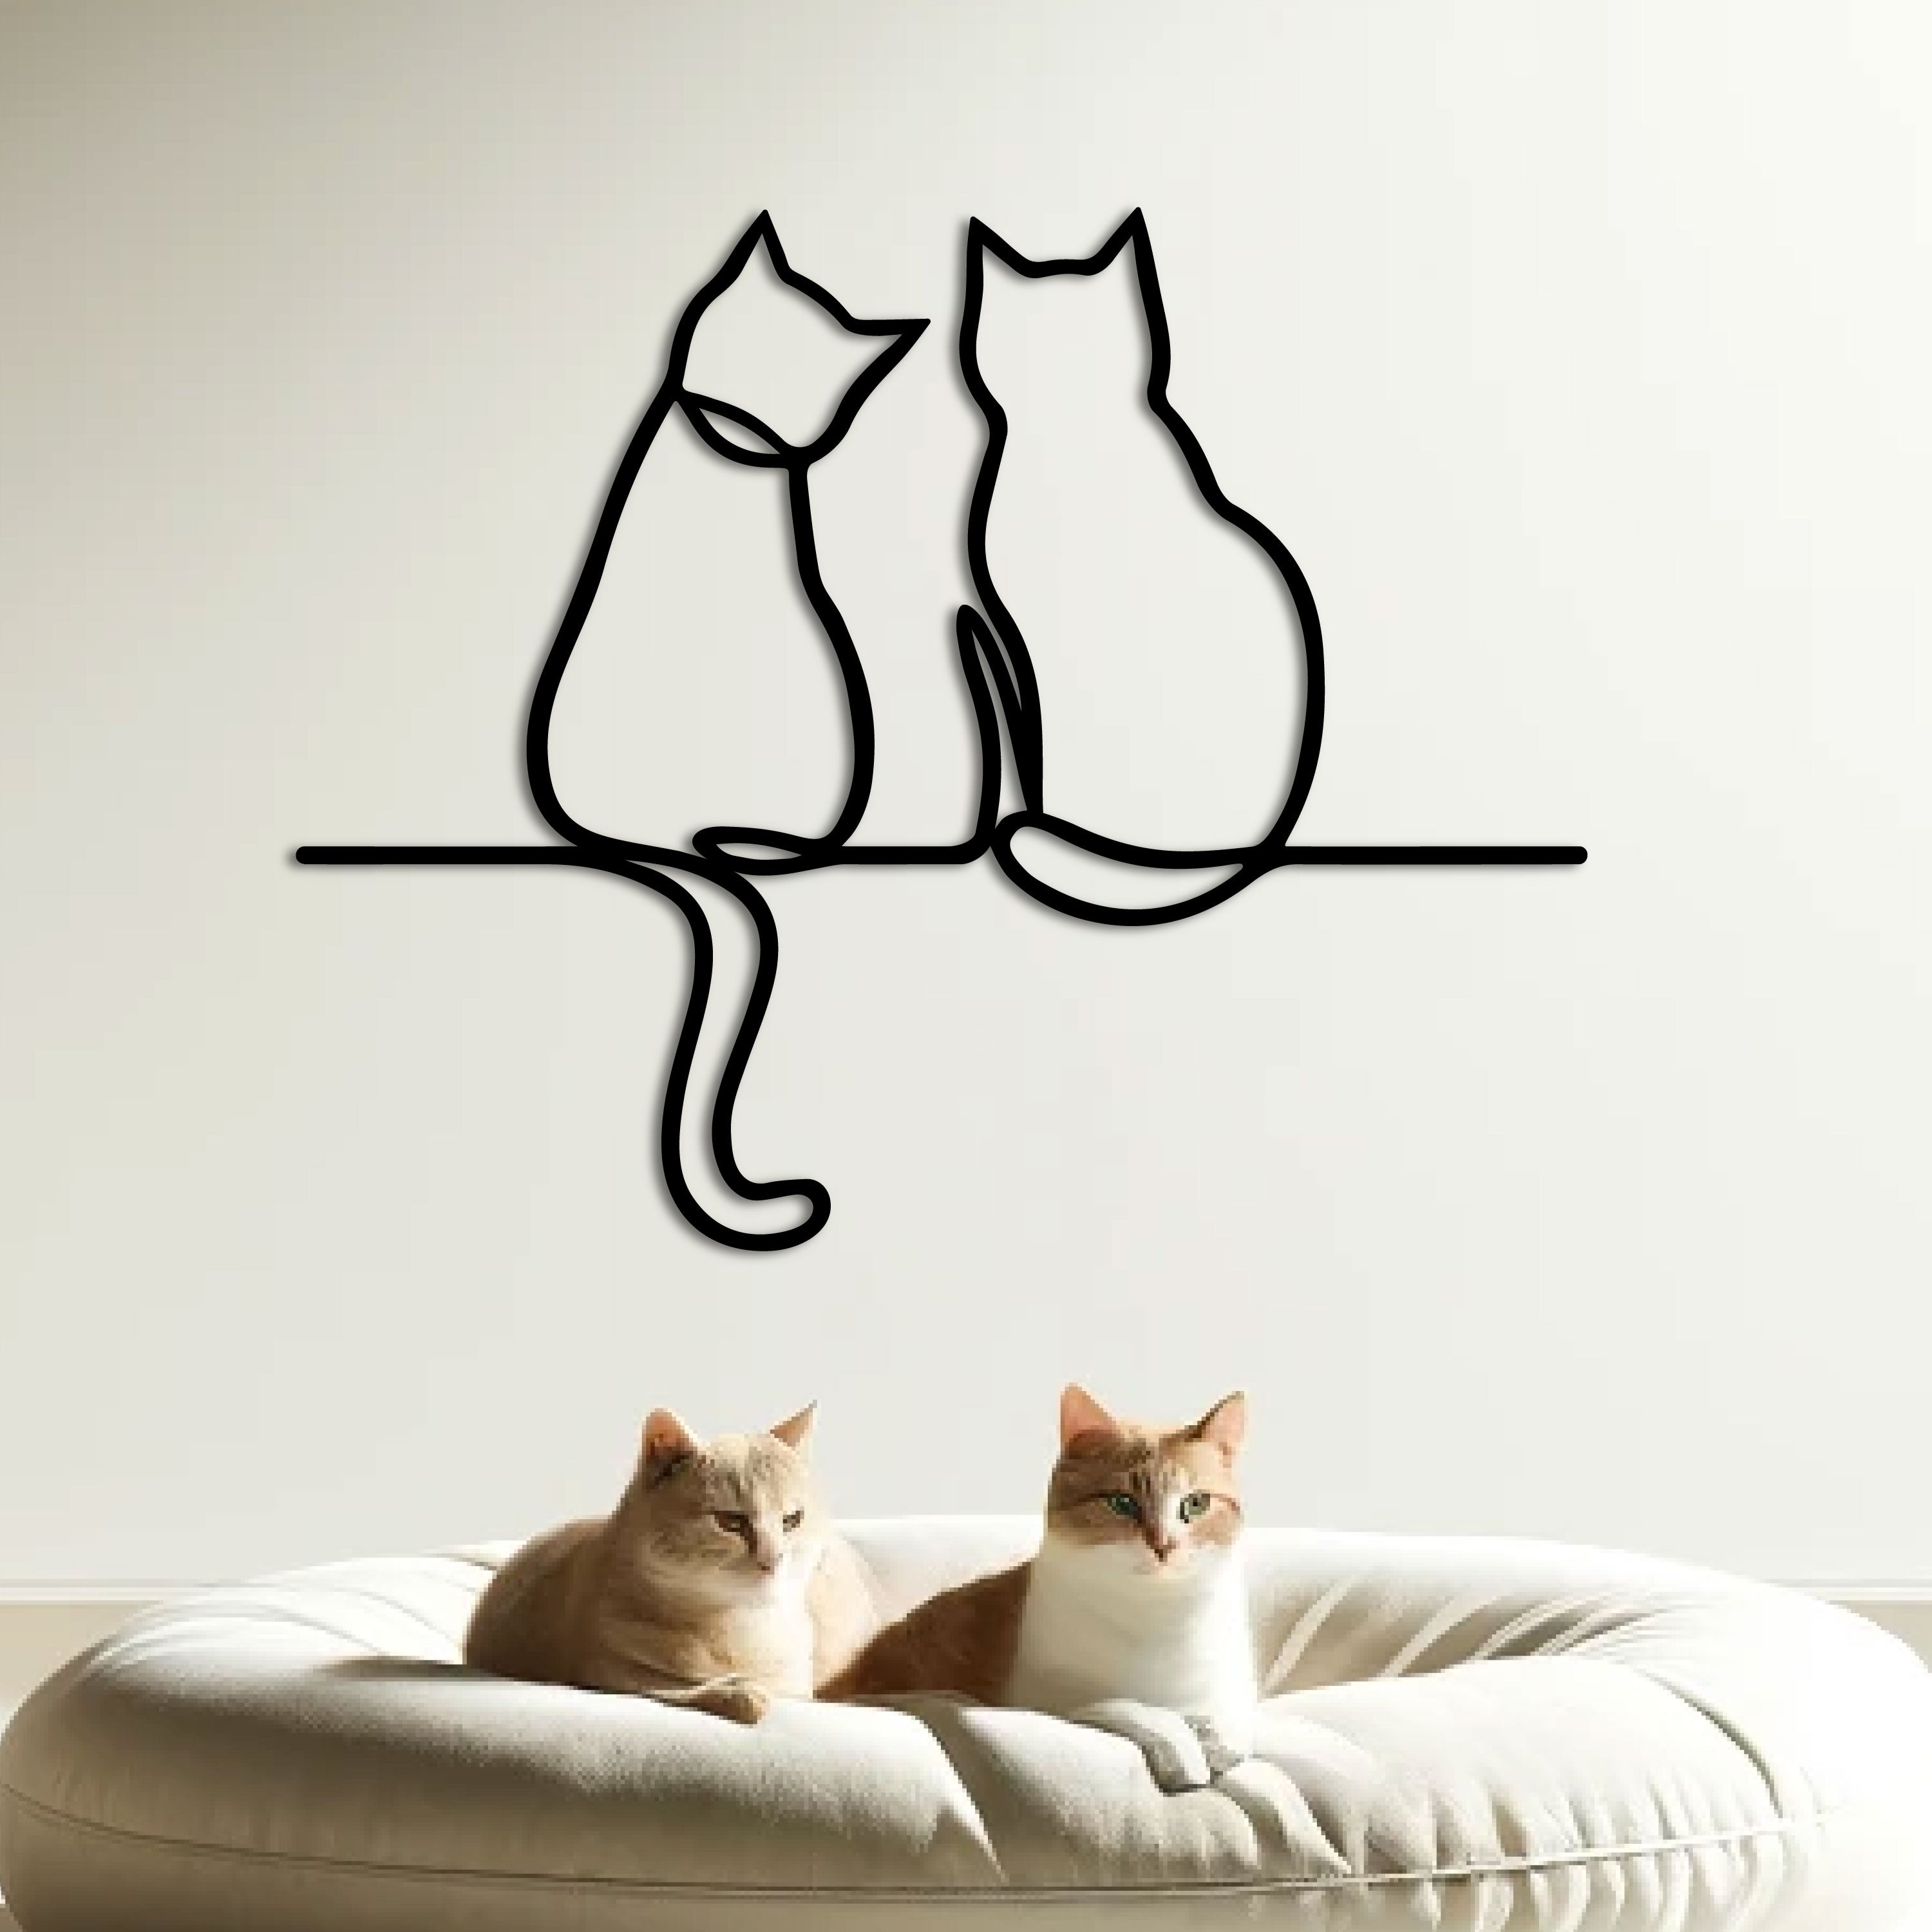 Geschichte von Zwei Katzen